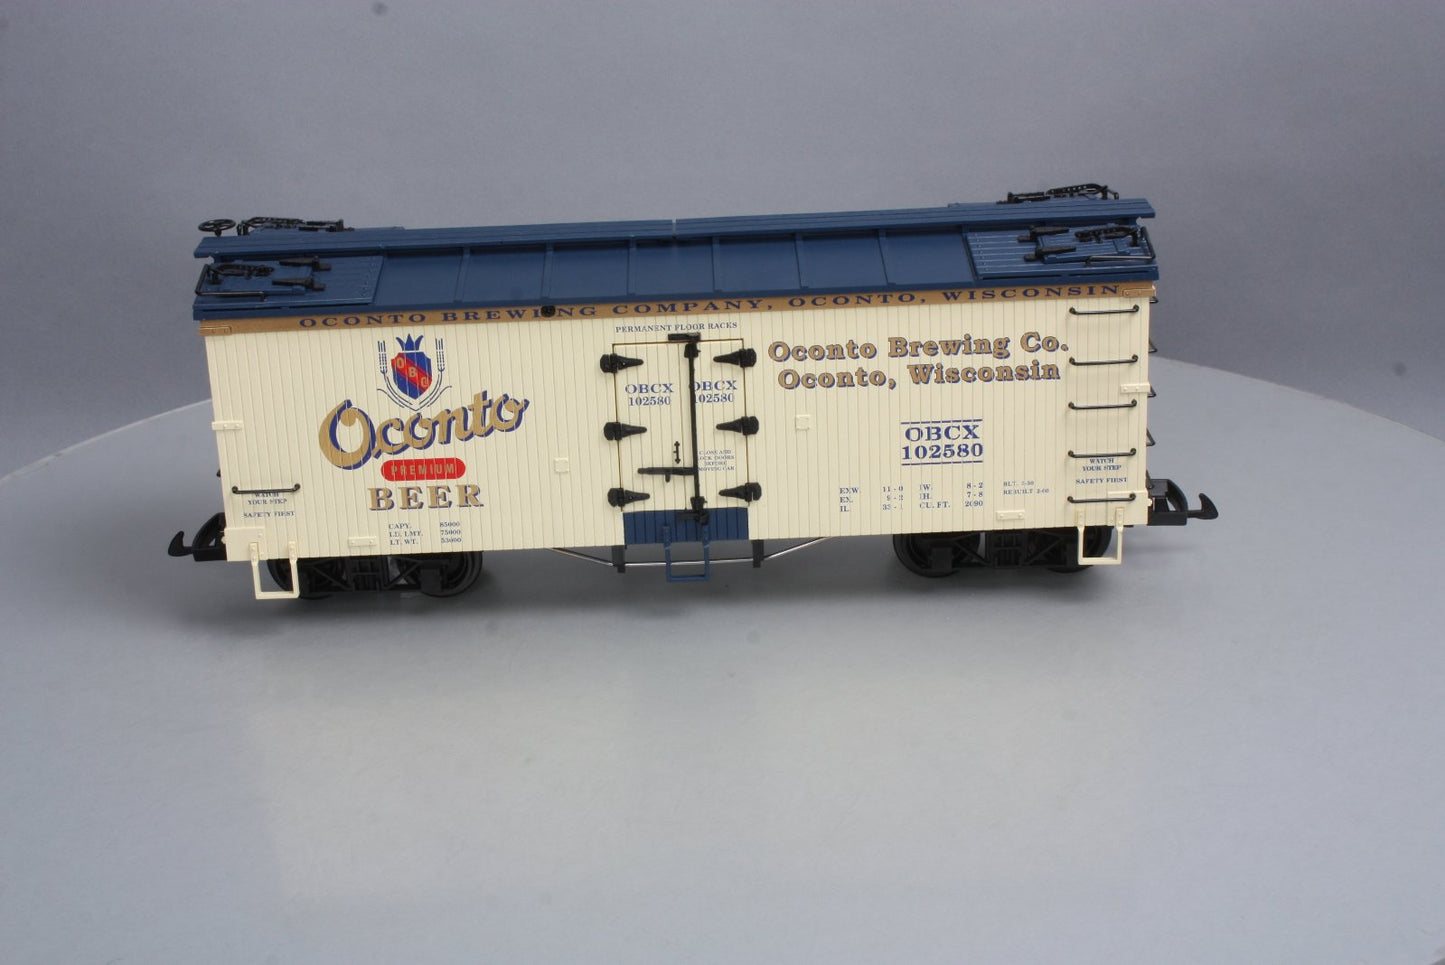 USA Trains 16403 G Scale Oconto Beer Refrigerator Car